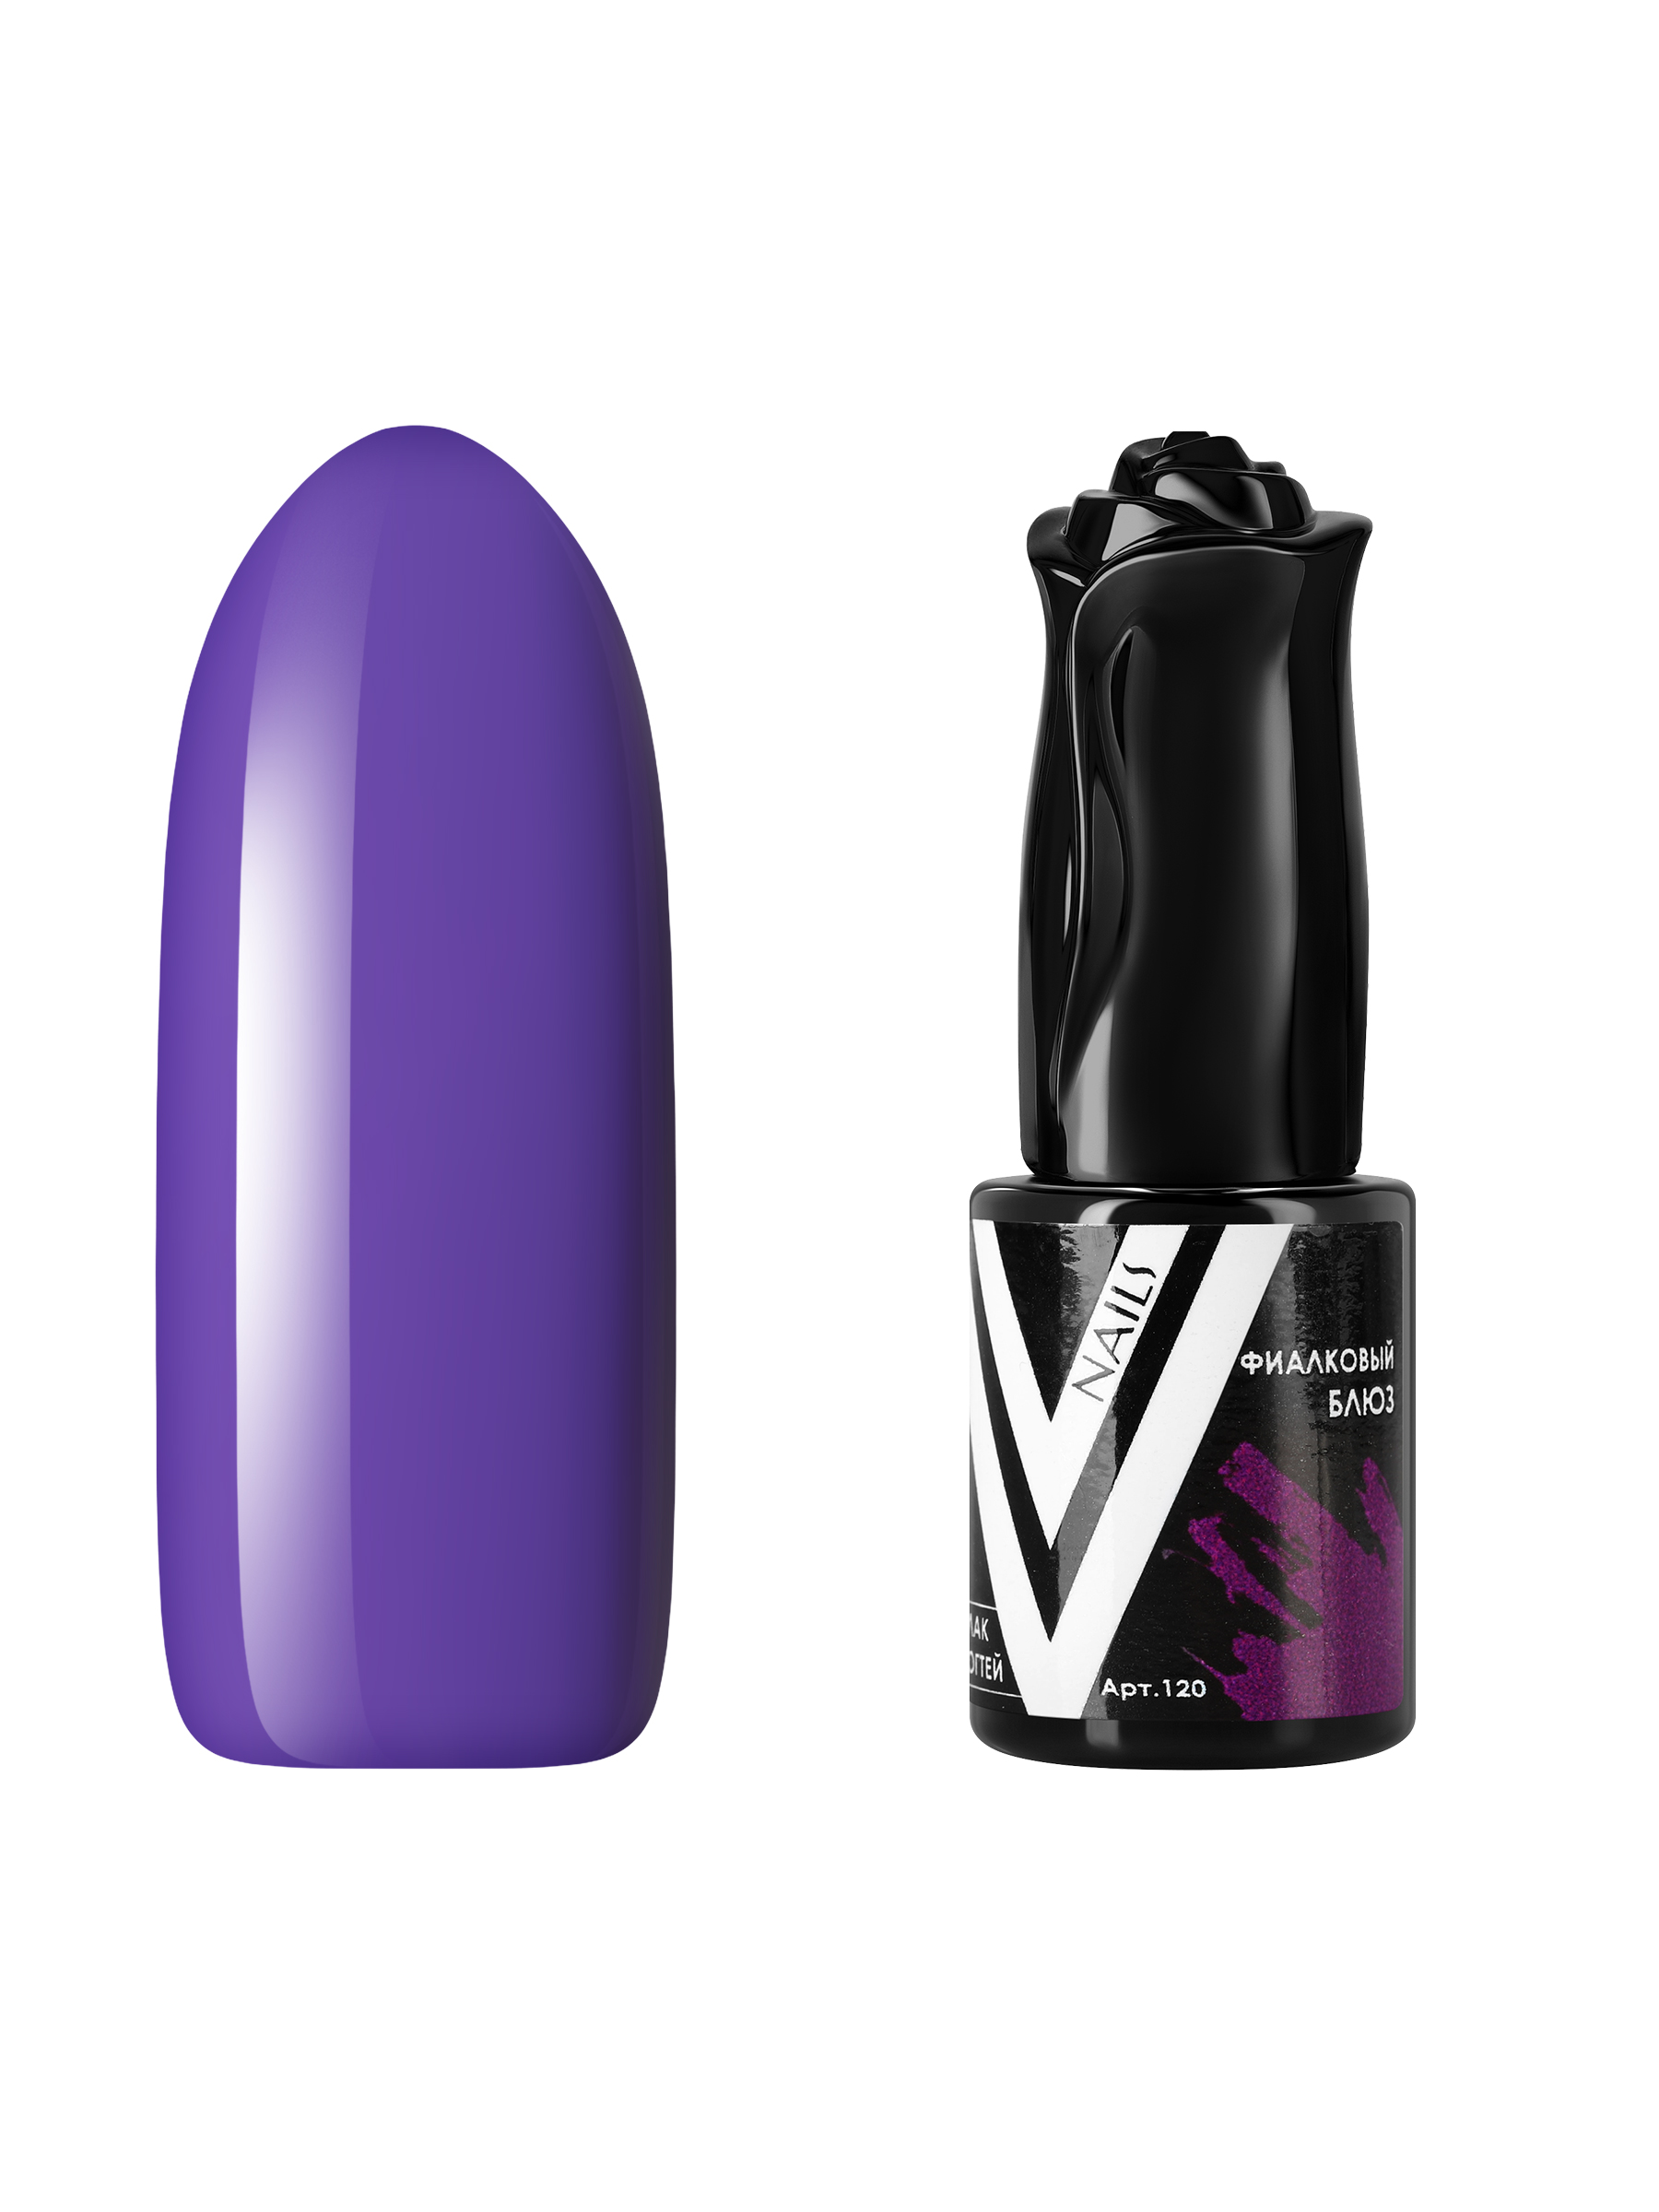 Гель-лак для ногтей Vogue Nails плотный самовыравнивающийся, темный фиолетовый, 10 мл гель лак planet nails vortexx 651 8 мл